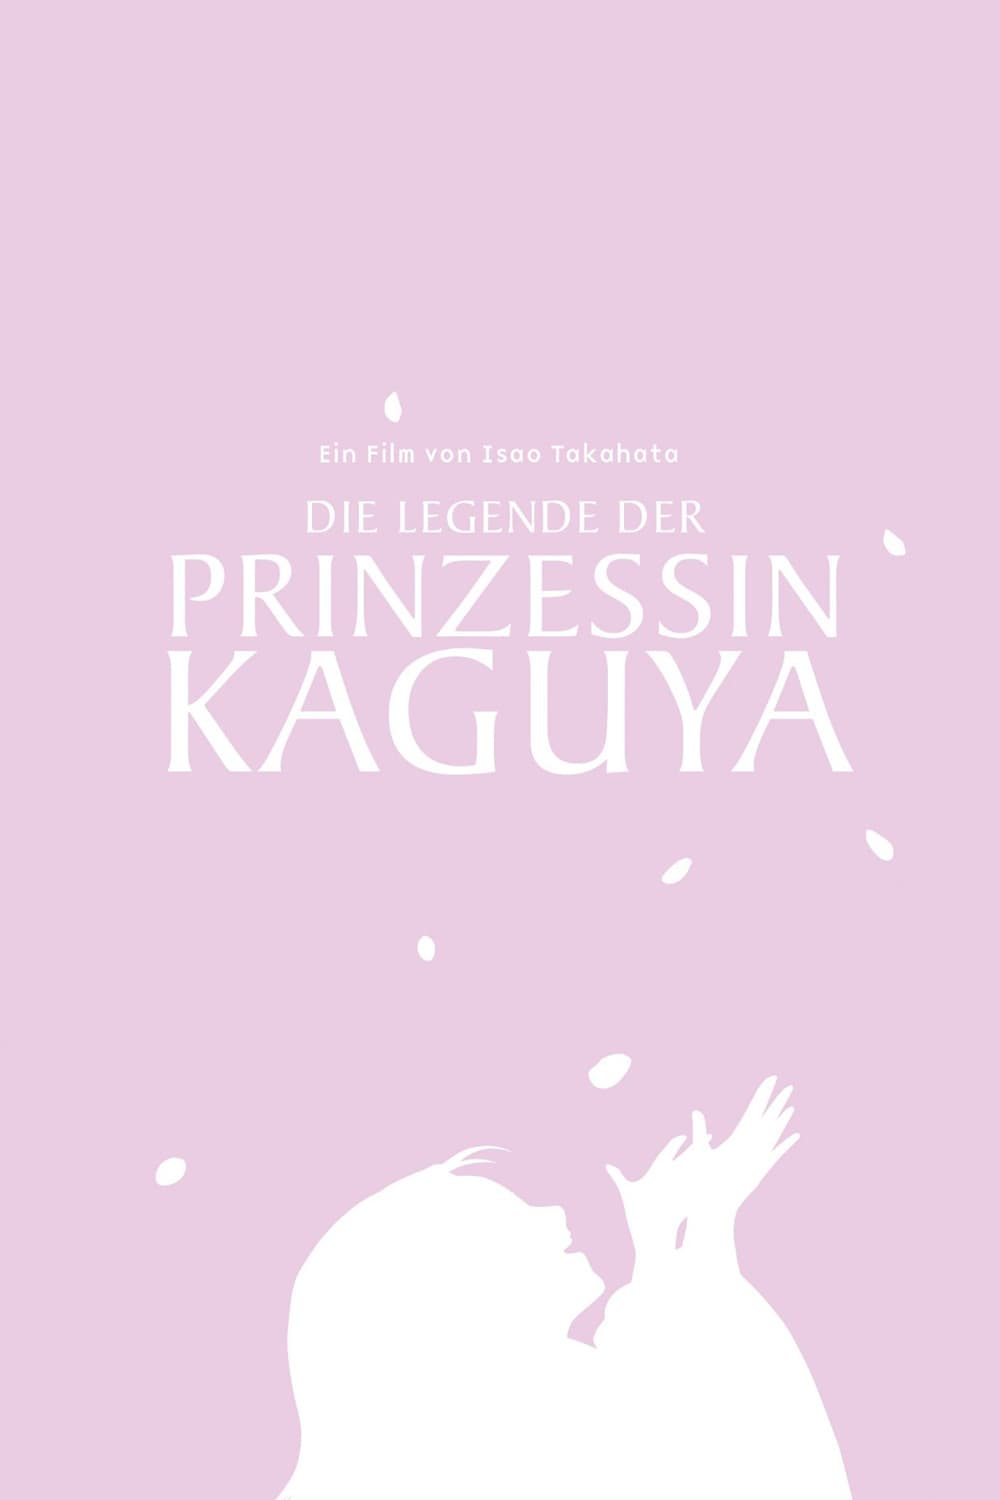 Plakat von "Die Legende der Prinzessin Kaguya"